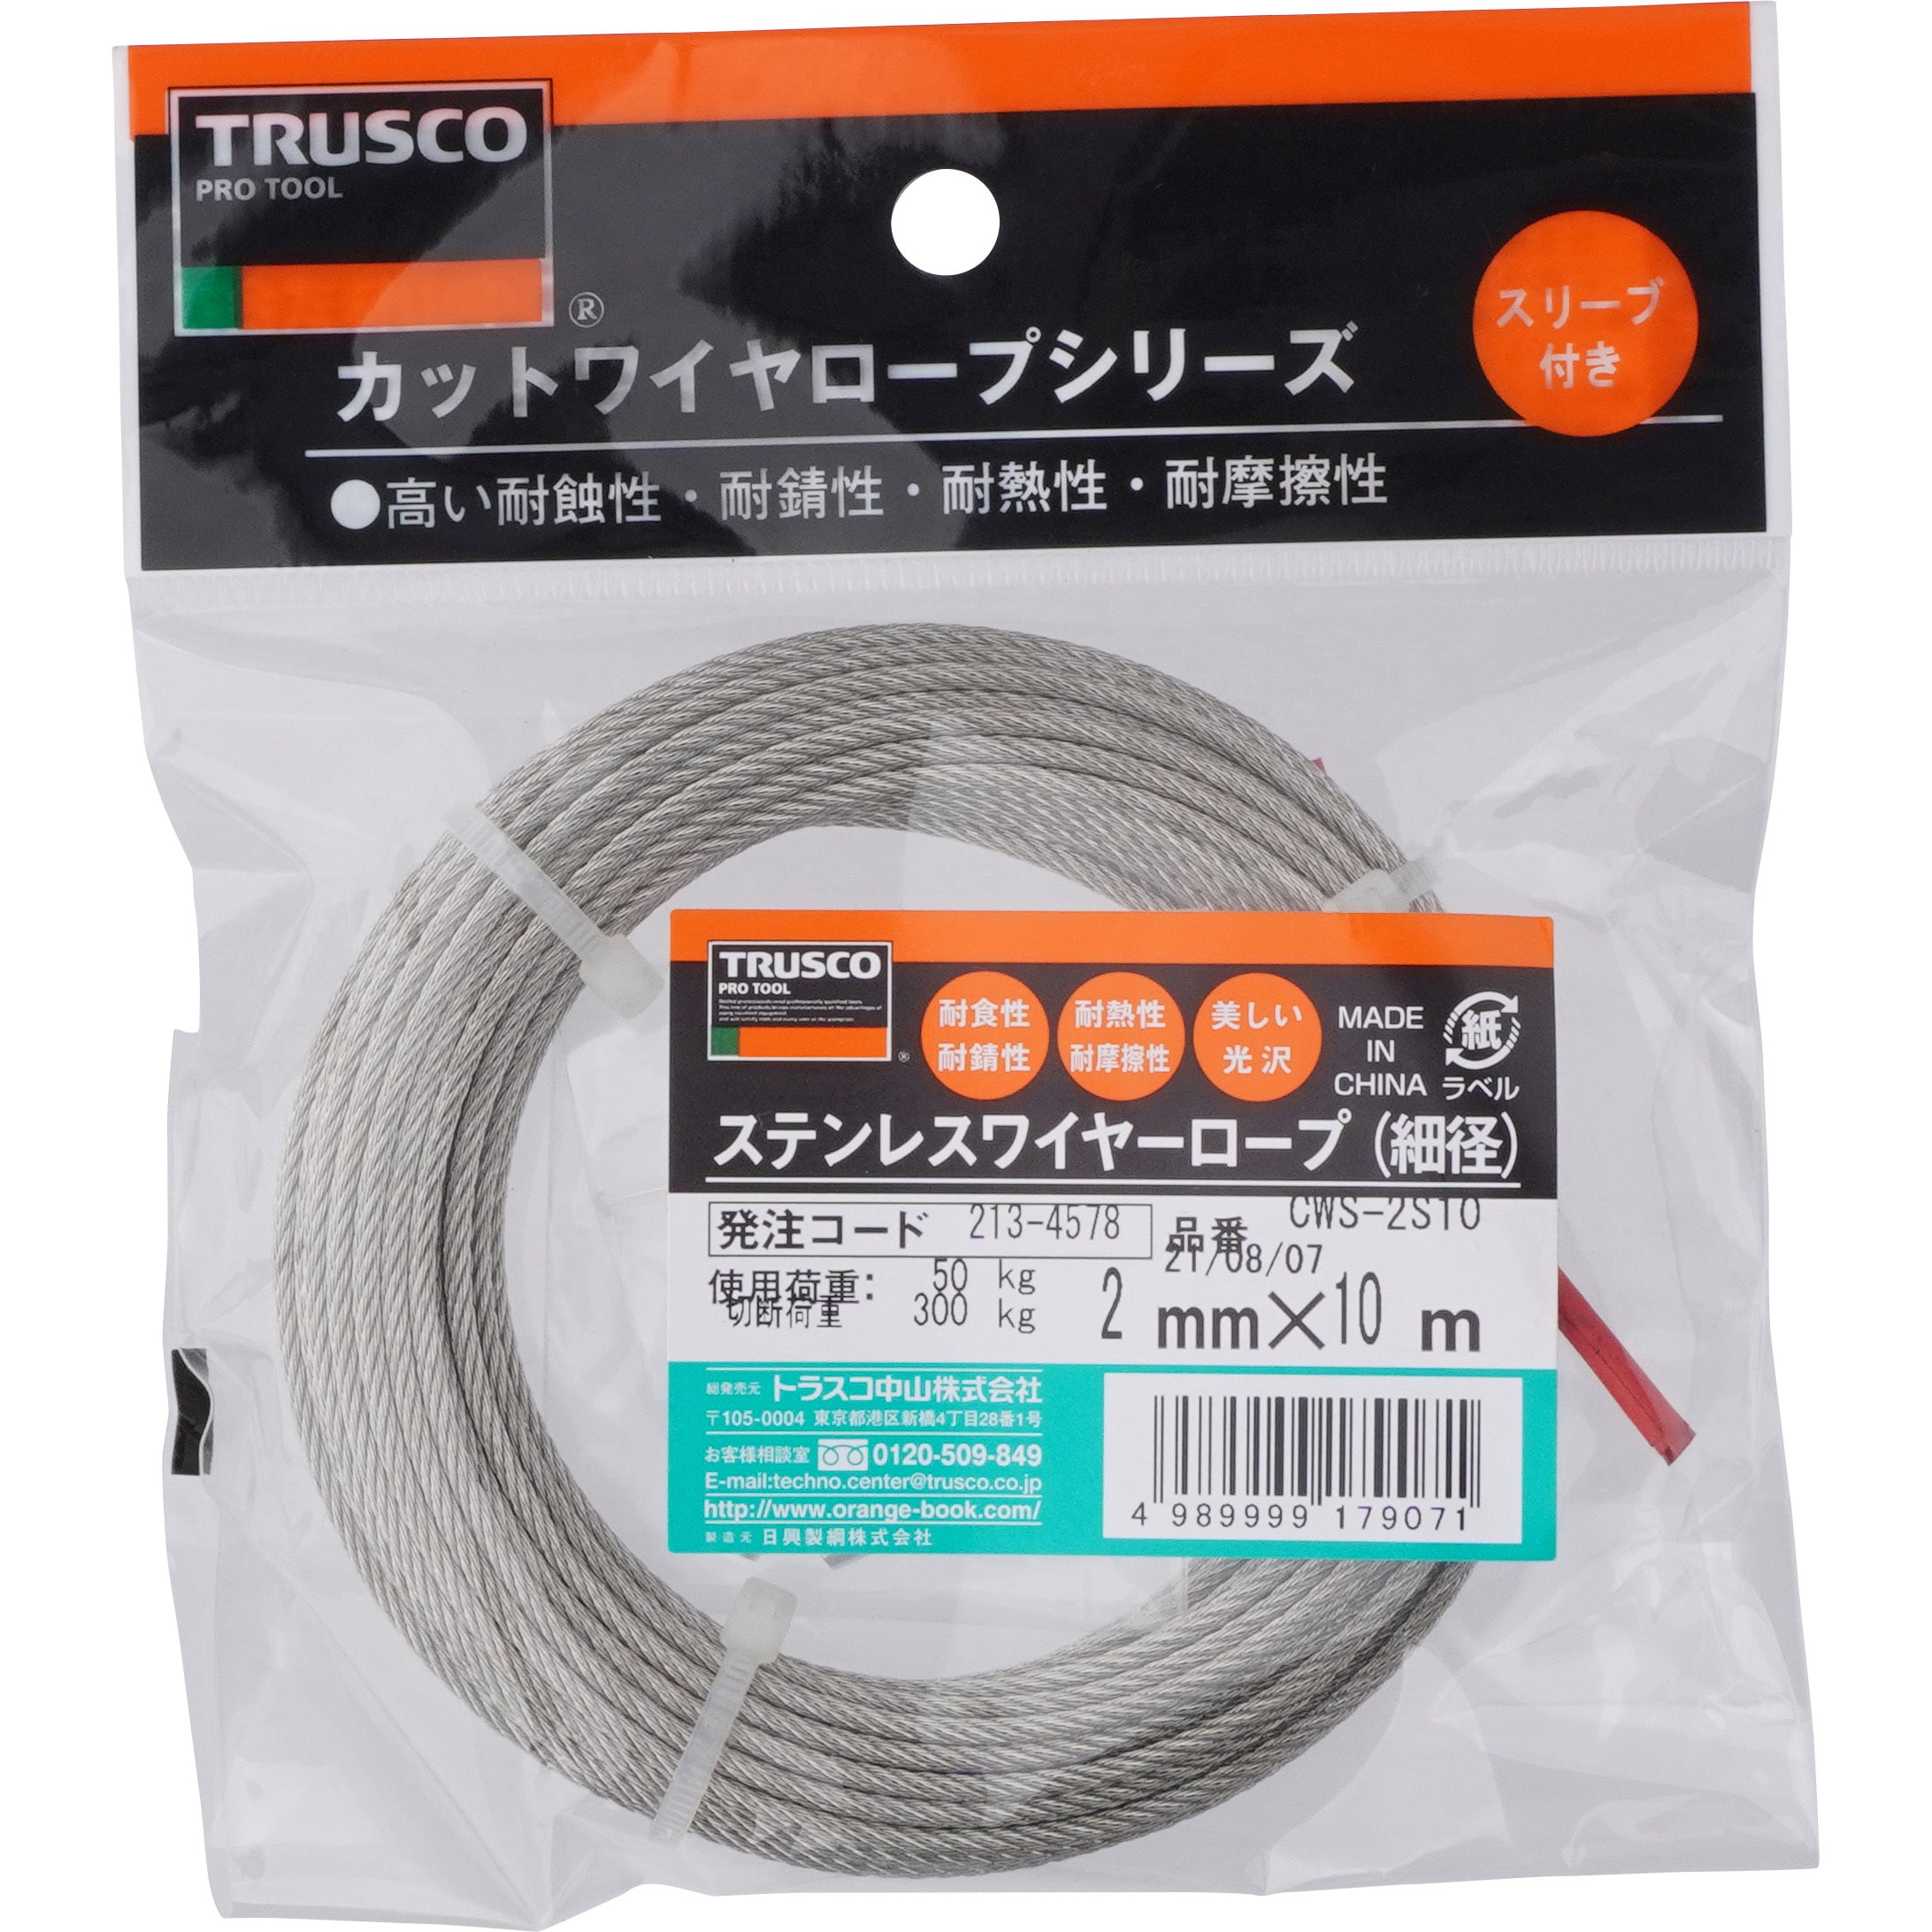 TRUSCO(トラスコ) ステンレスワイヤロープ Φ2.0mm×200m CWS-2S200 通販